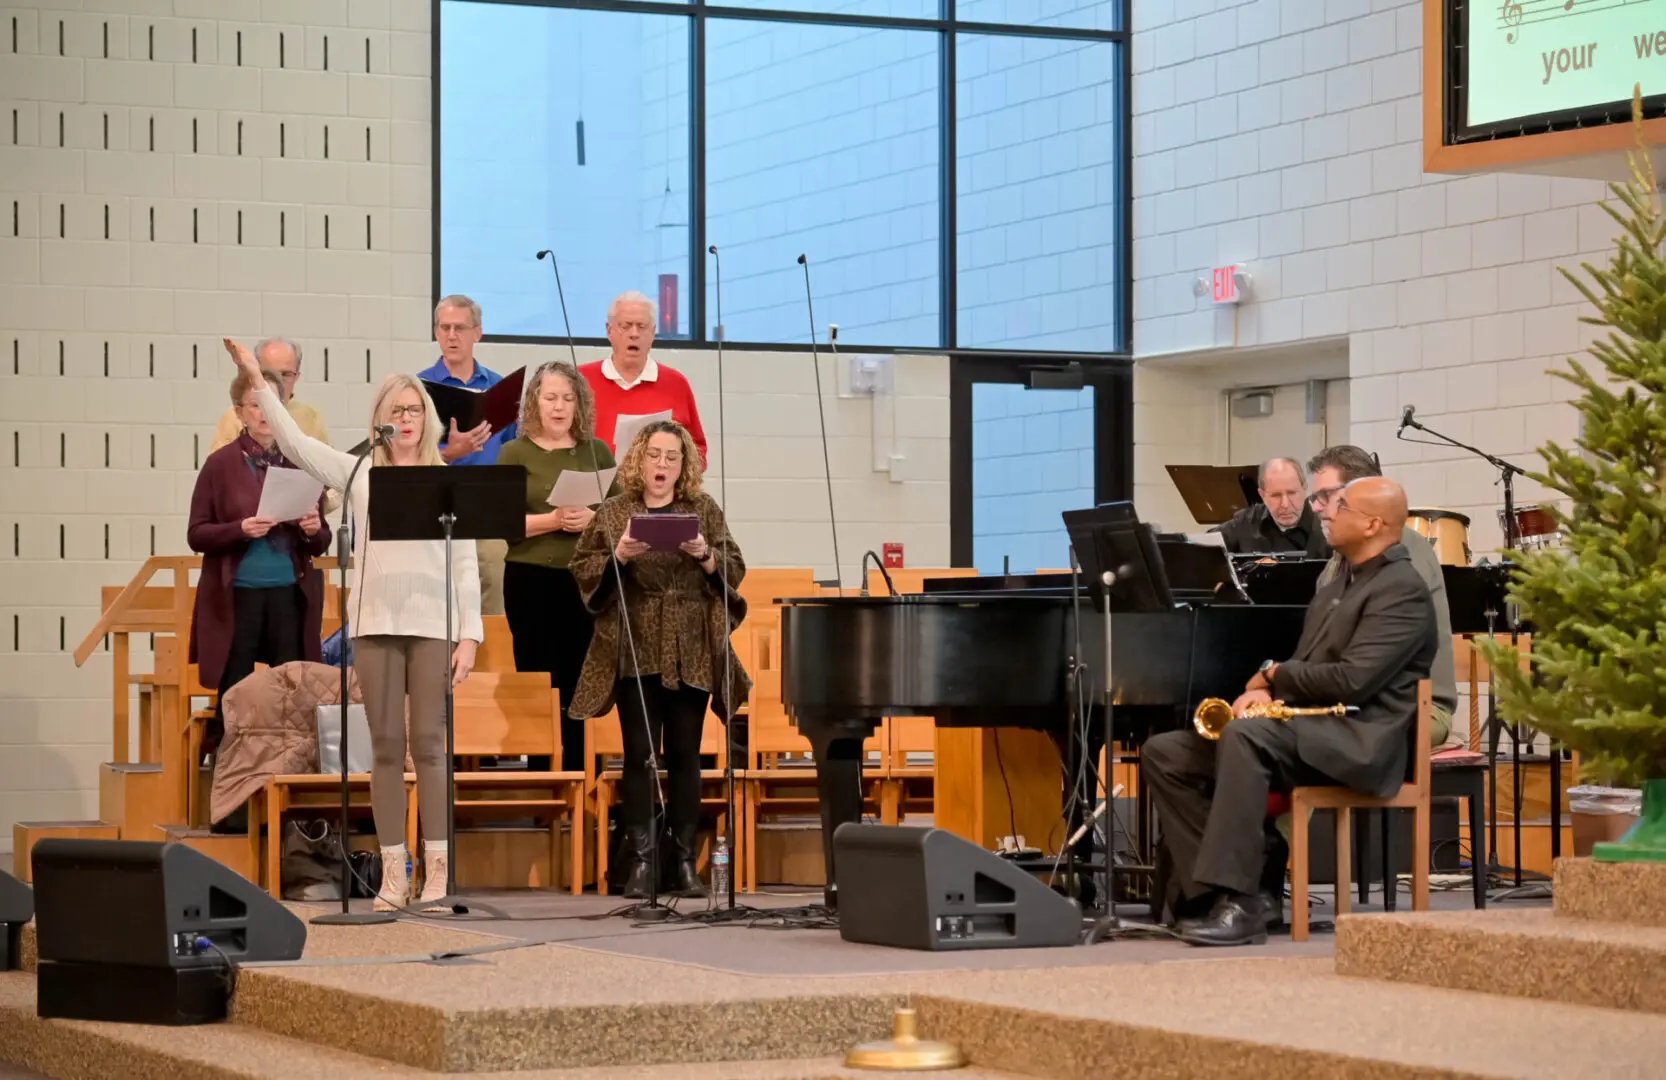 Church choir and pianist perform music.